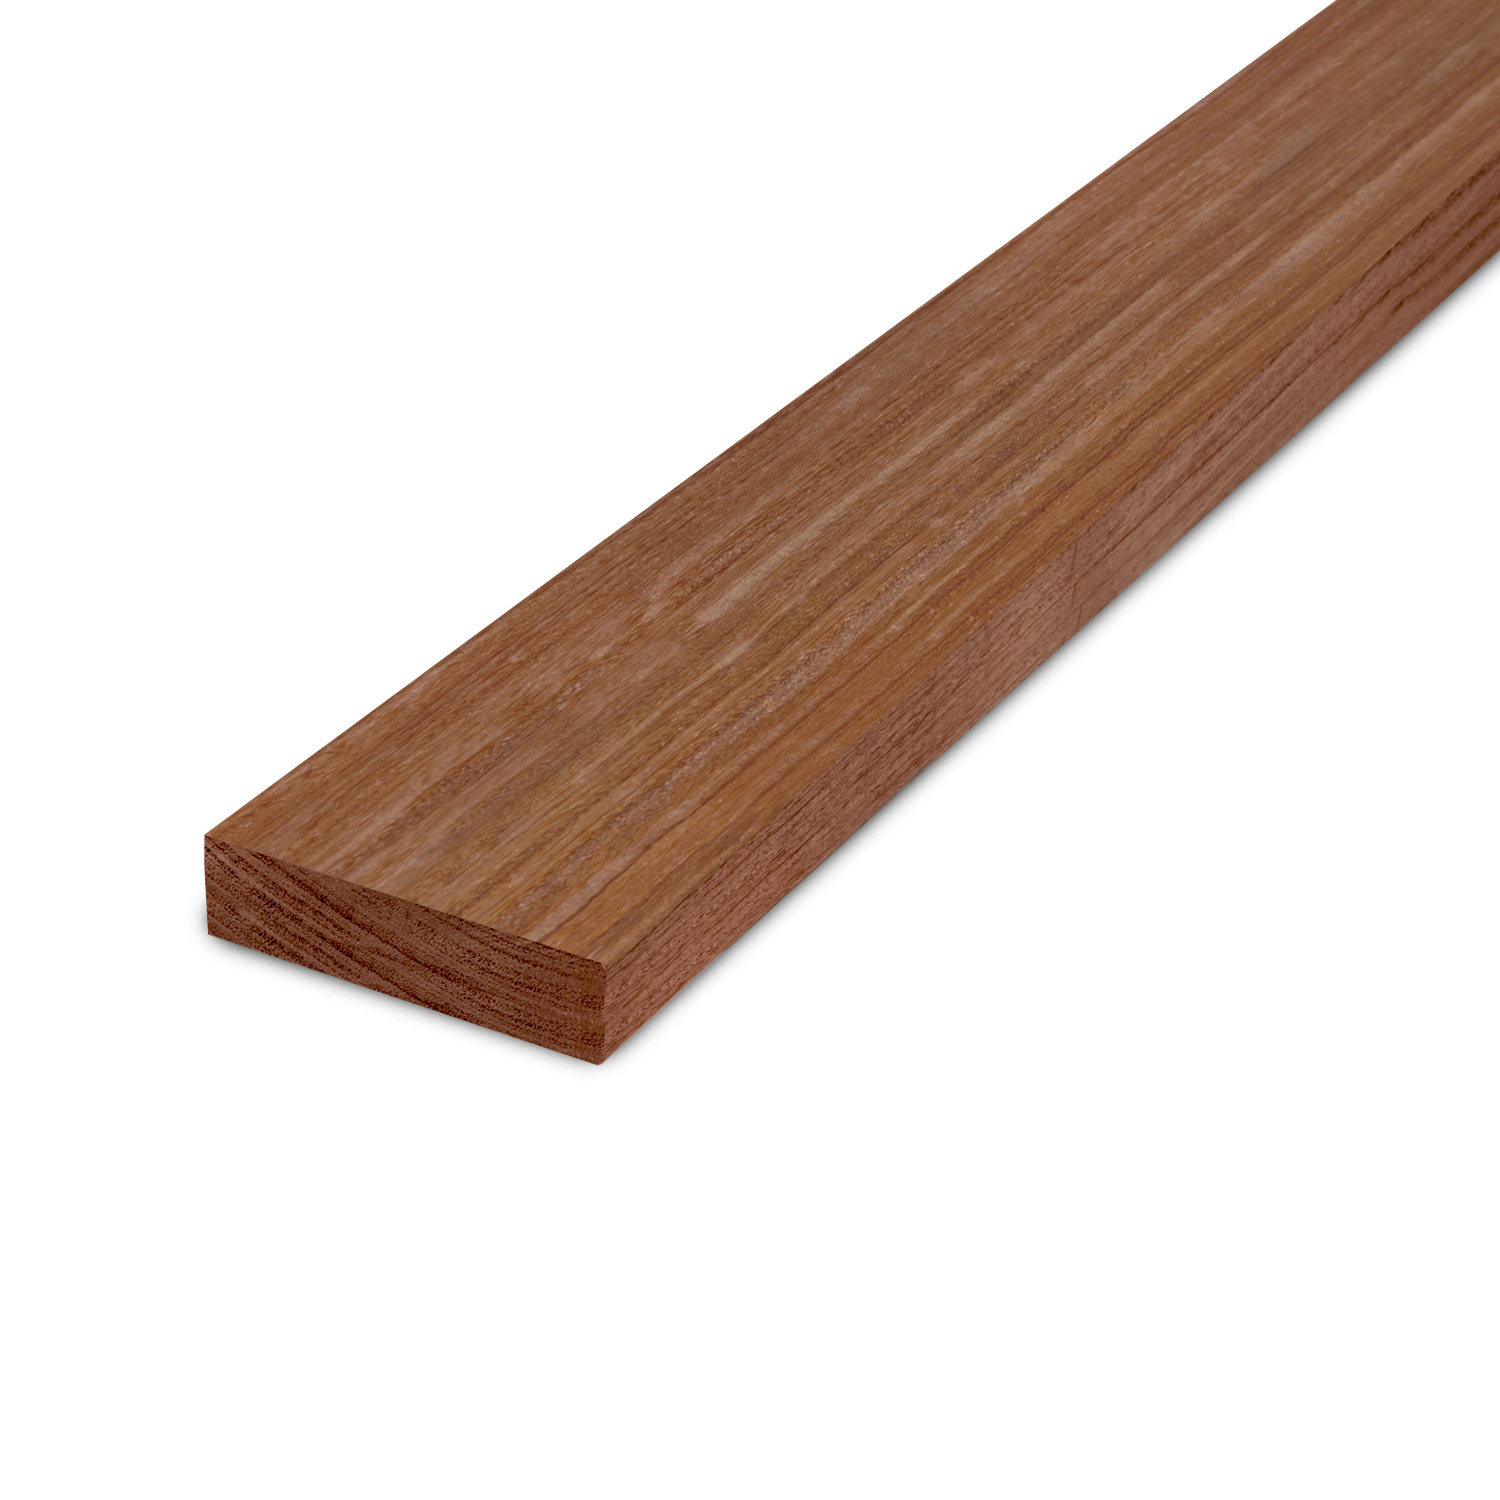 Fantastisch Doe mijn best Wonen Cumaru plank - 28x70mm - geschaafd tropisch hardhout bij HOUTvakman |  HOUTvakman